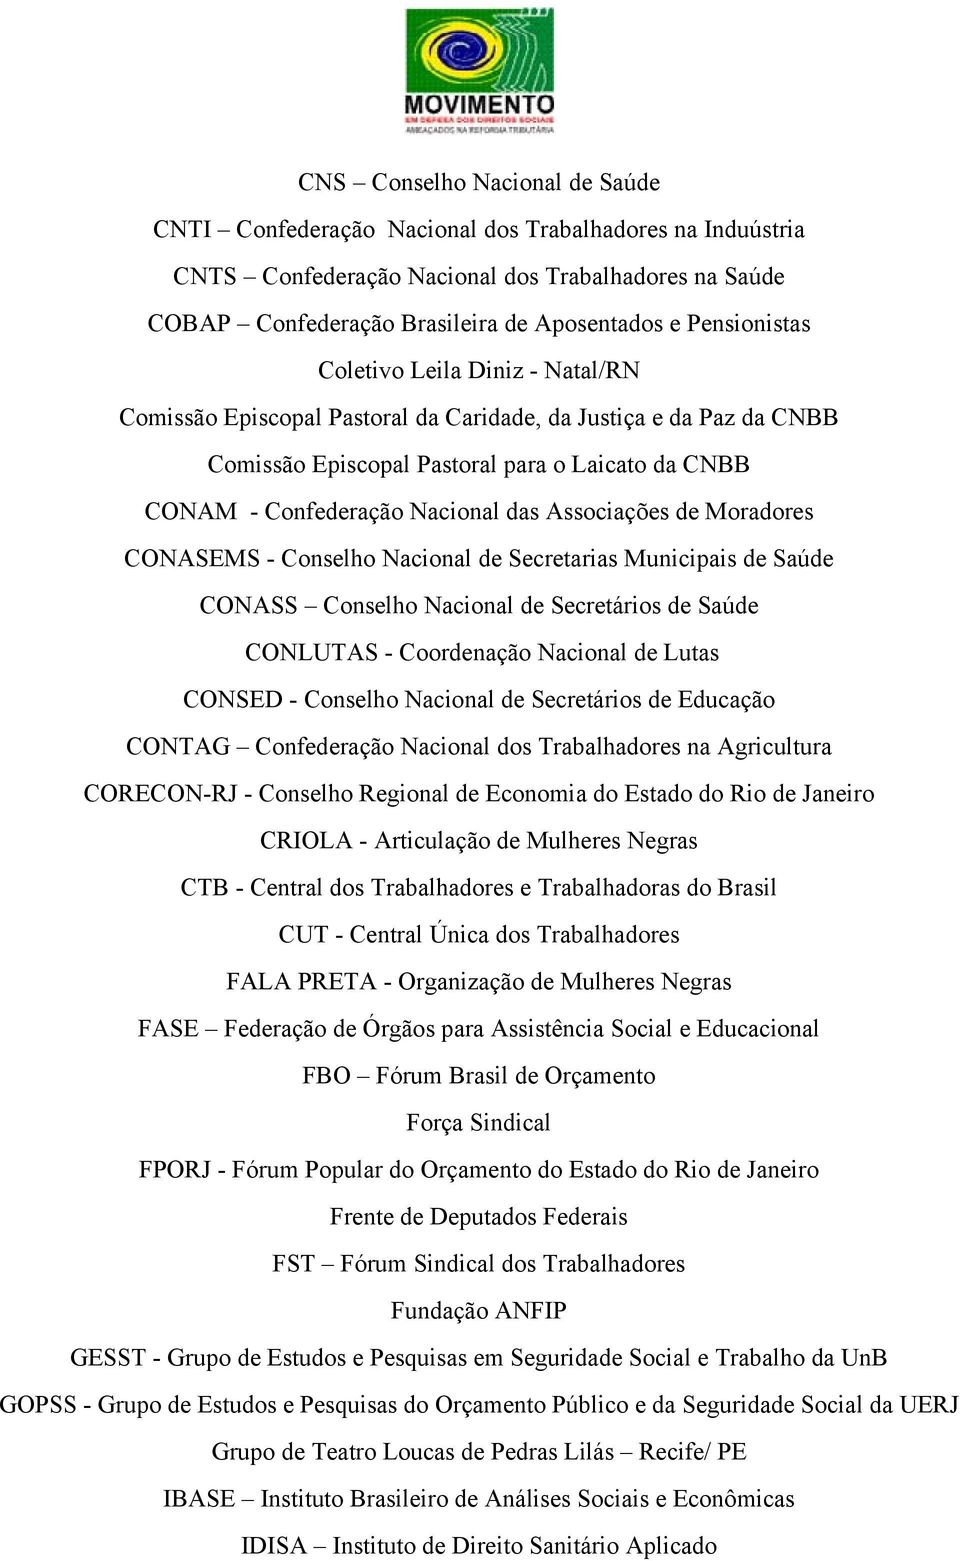 Associações de Moradores CONASEMS - Conselho Nacional de Secretarias Municipais de Saúde CONASS Conselho Nacional de Secretários de Saúde CONLUTAS - Coordenação Nacional de Lutas CONSED - Conselho